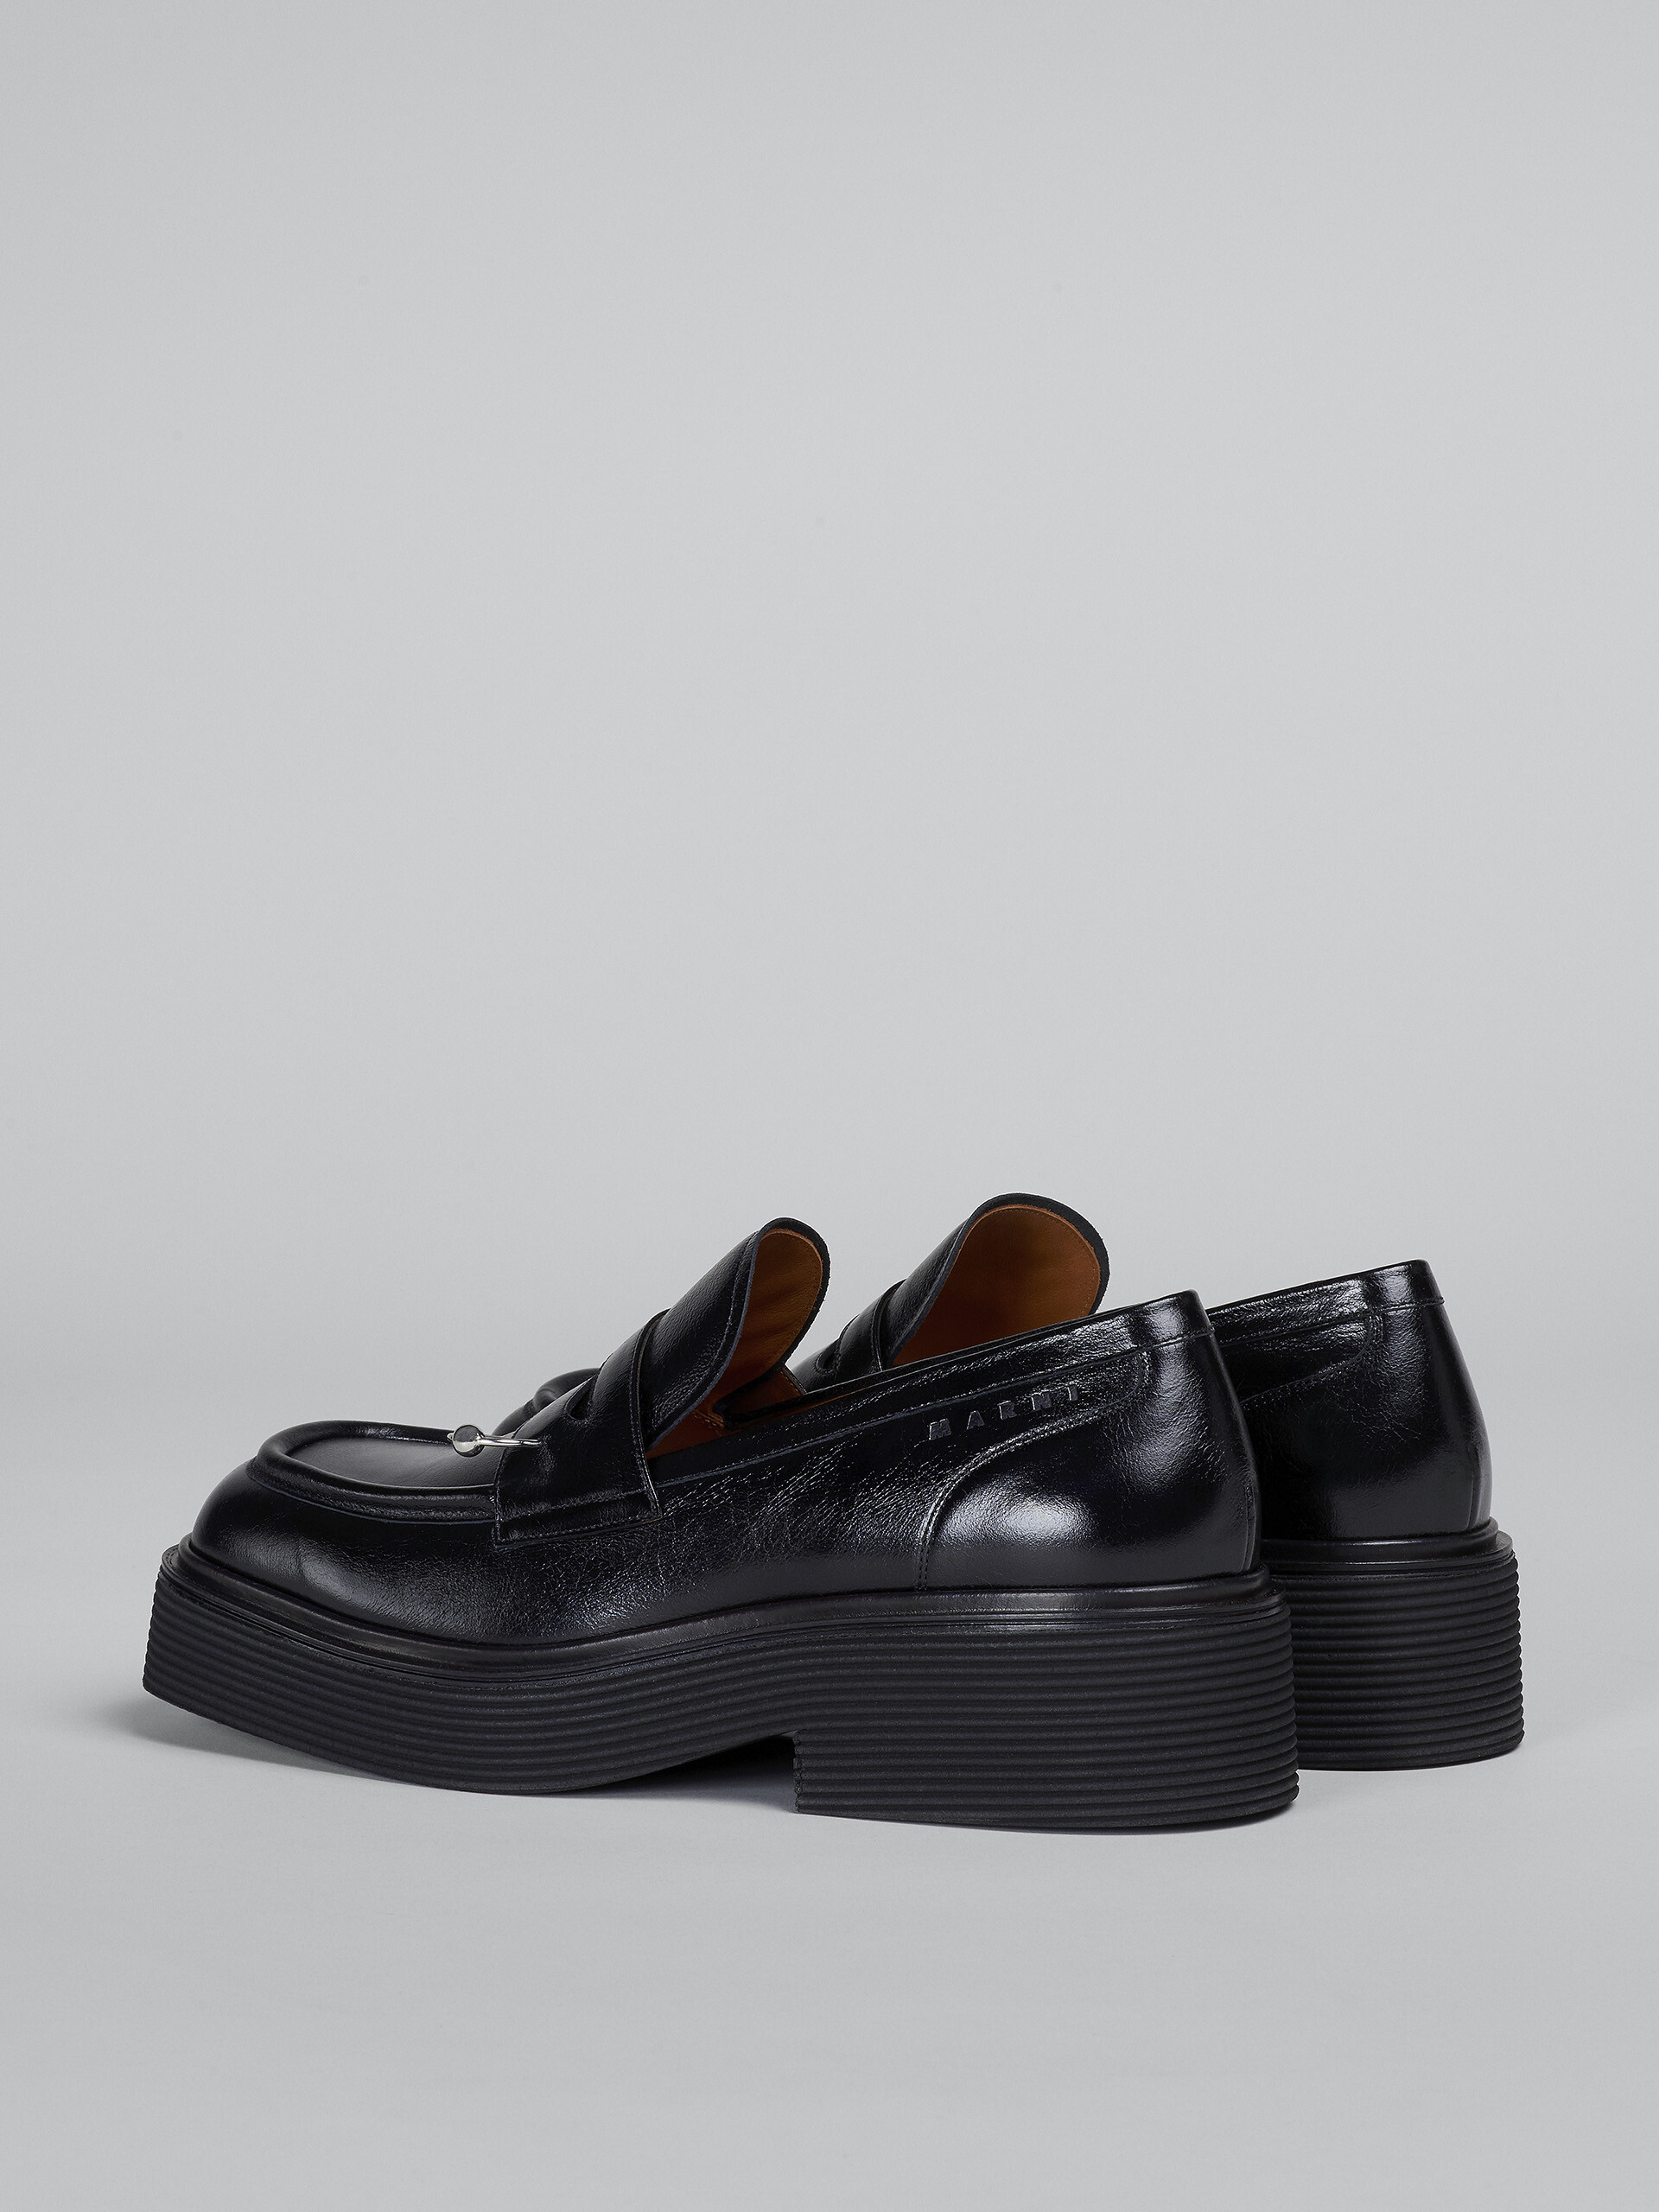 Mokassin aus schwarzem, glänzendem Leder - Schnürschuhe - Image 3